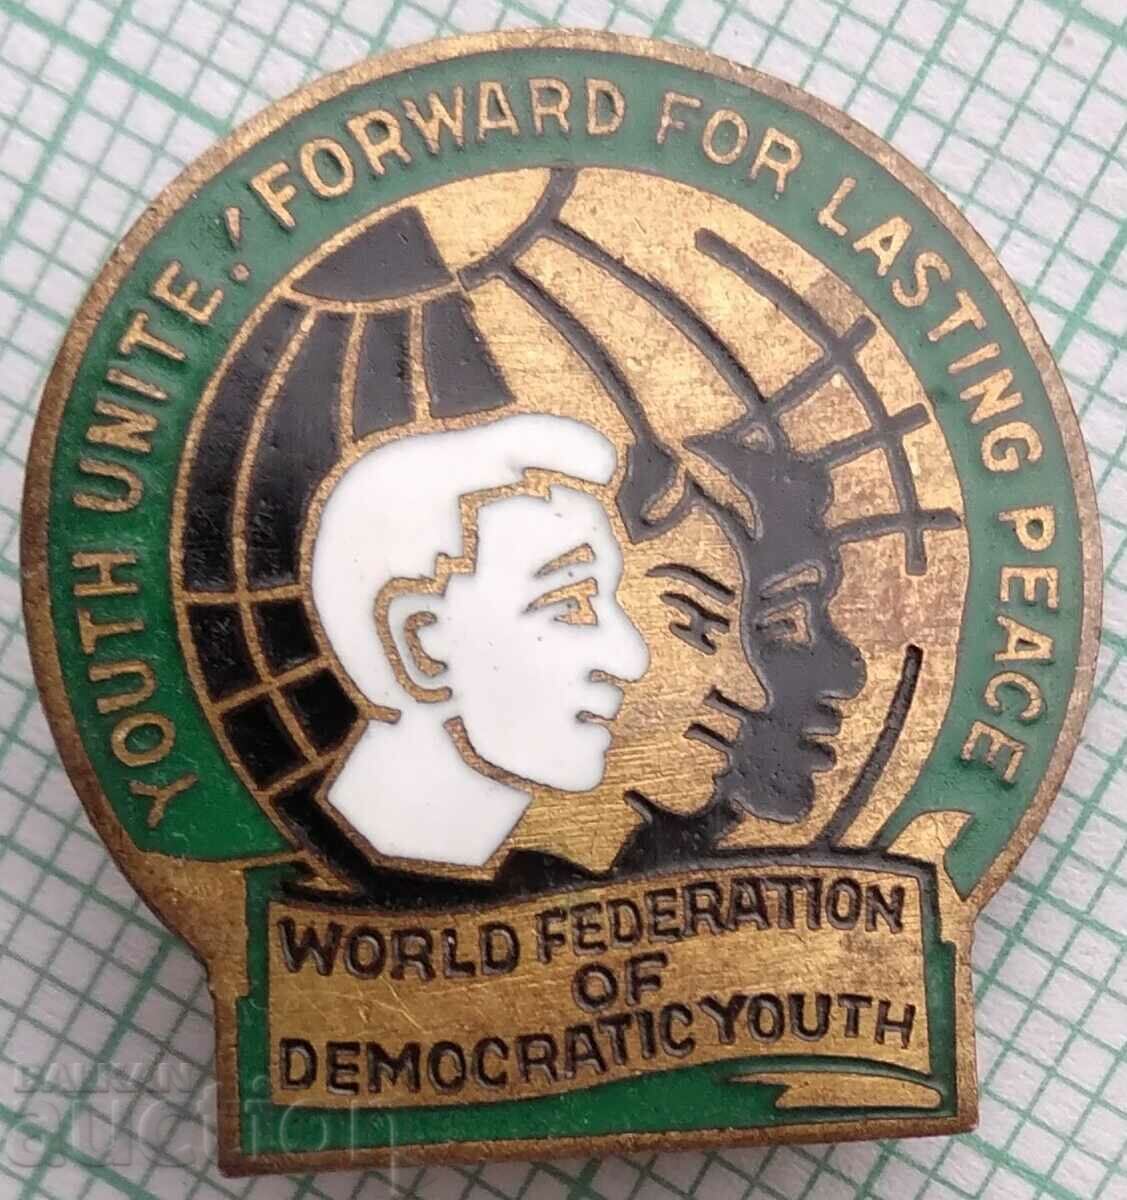 16314 WFDY Световна федерация на демократичната младеж